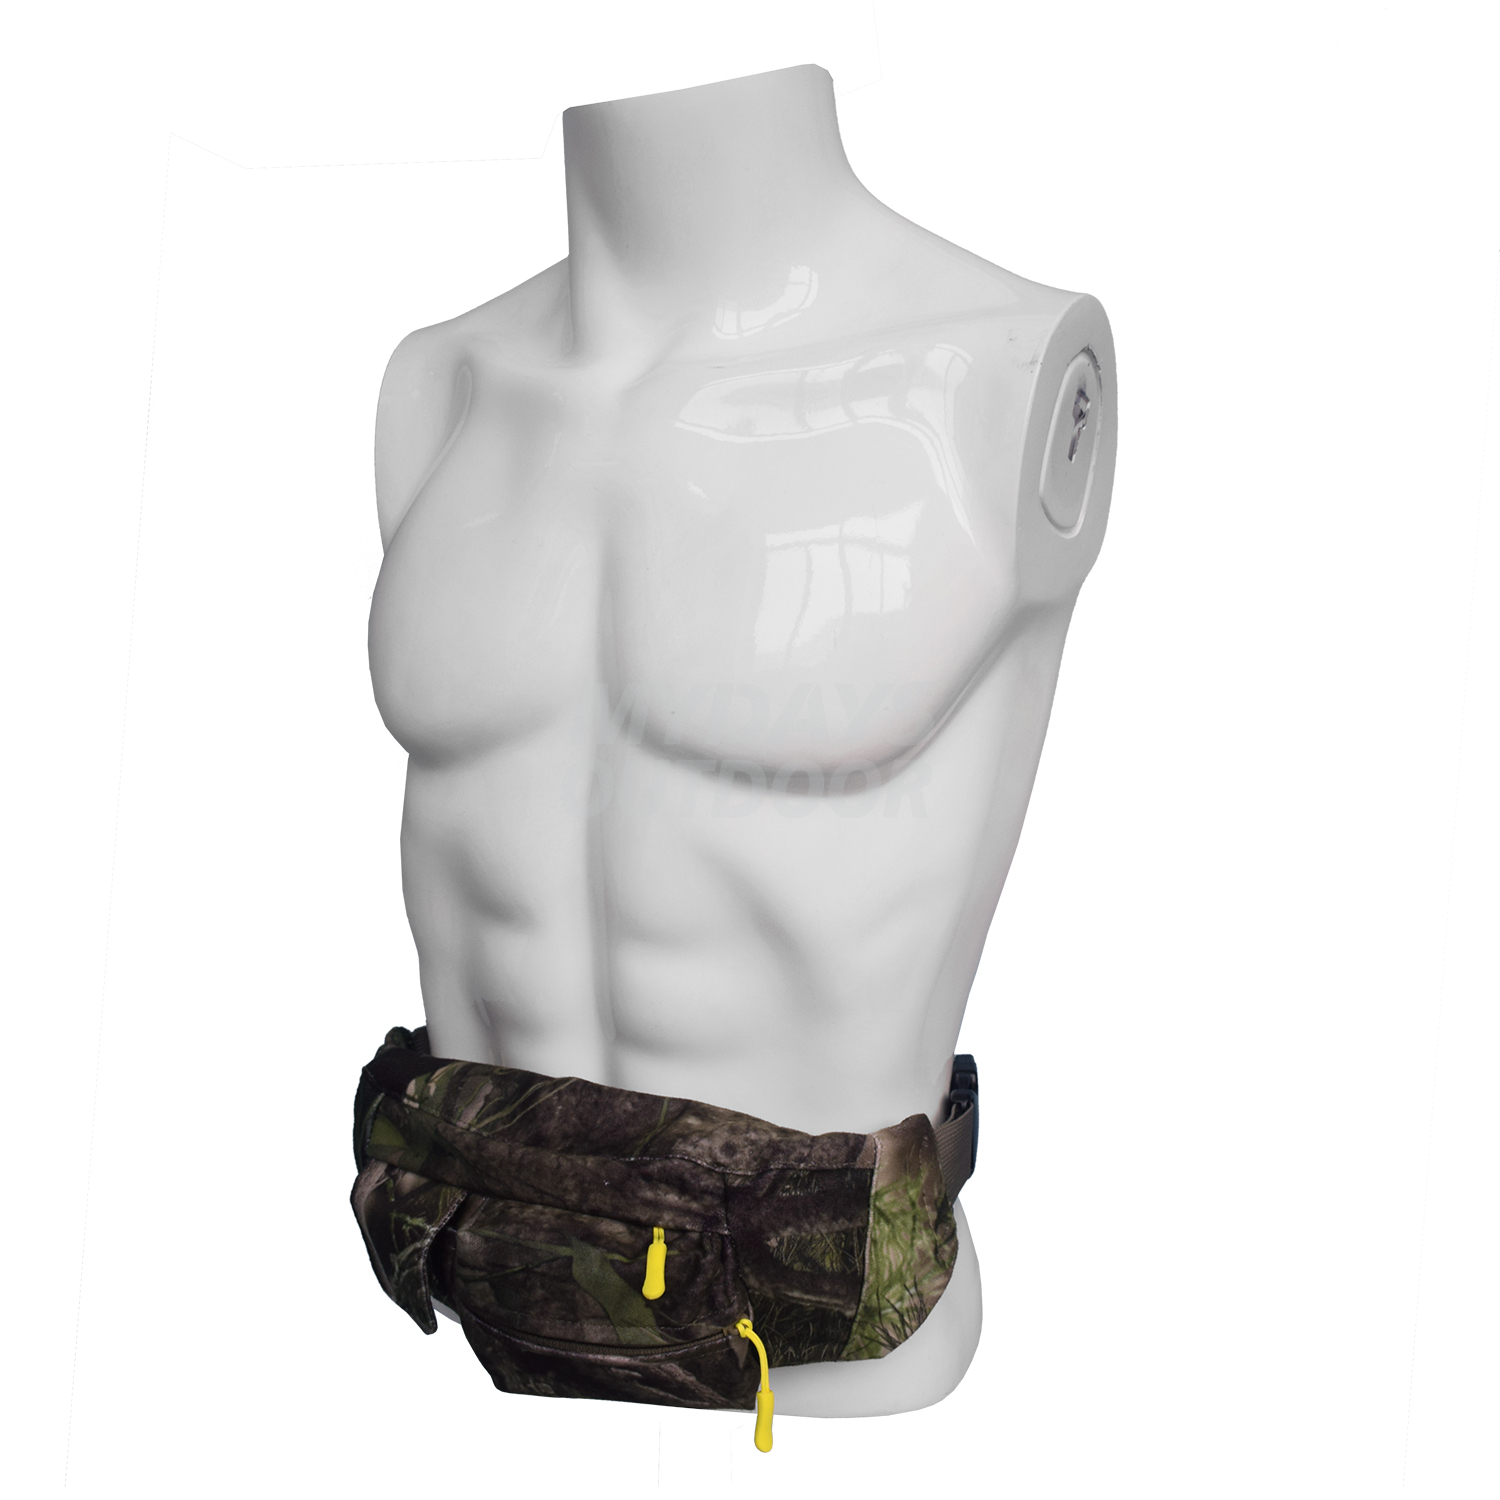 대부분의 야외 스포츠에 적합한 전술 패니 팩 군용 허리 가방 MDSHF-2